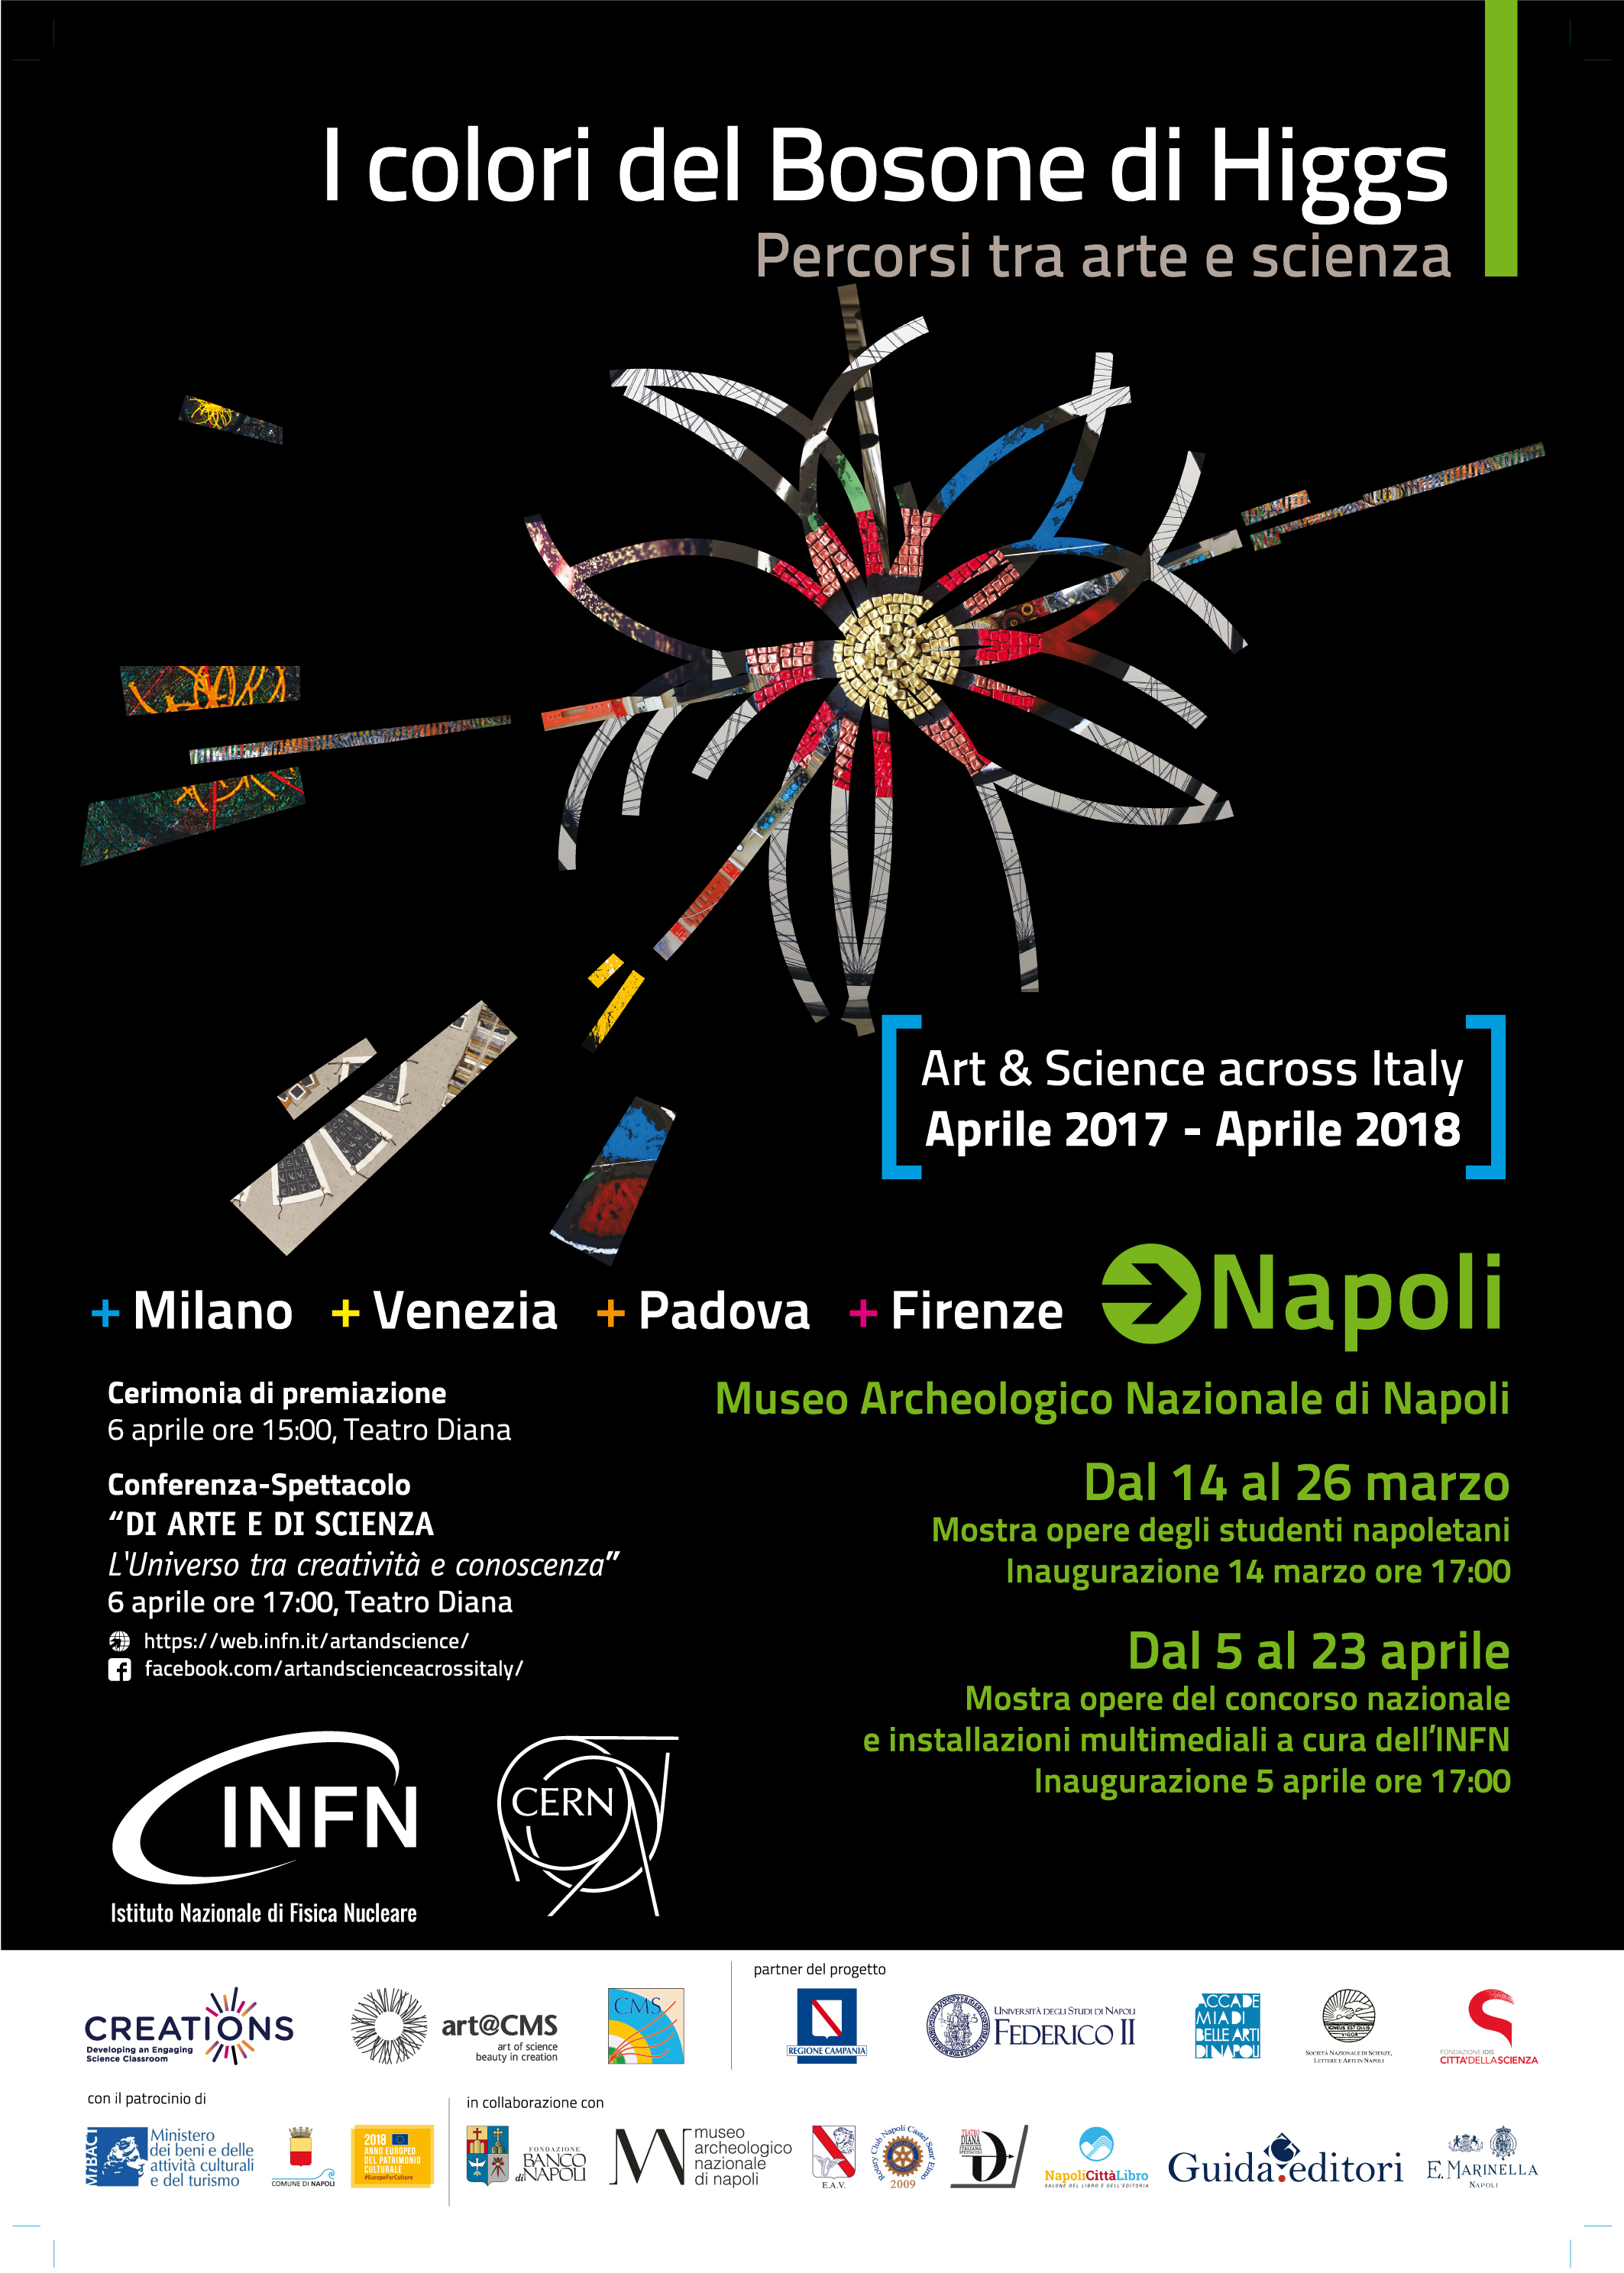  I colori del Bosone di Higgs: percorsi tra arte e scienza al Museo Archeologico Nazionale di Napoli